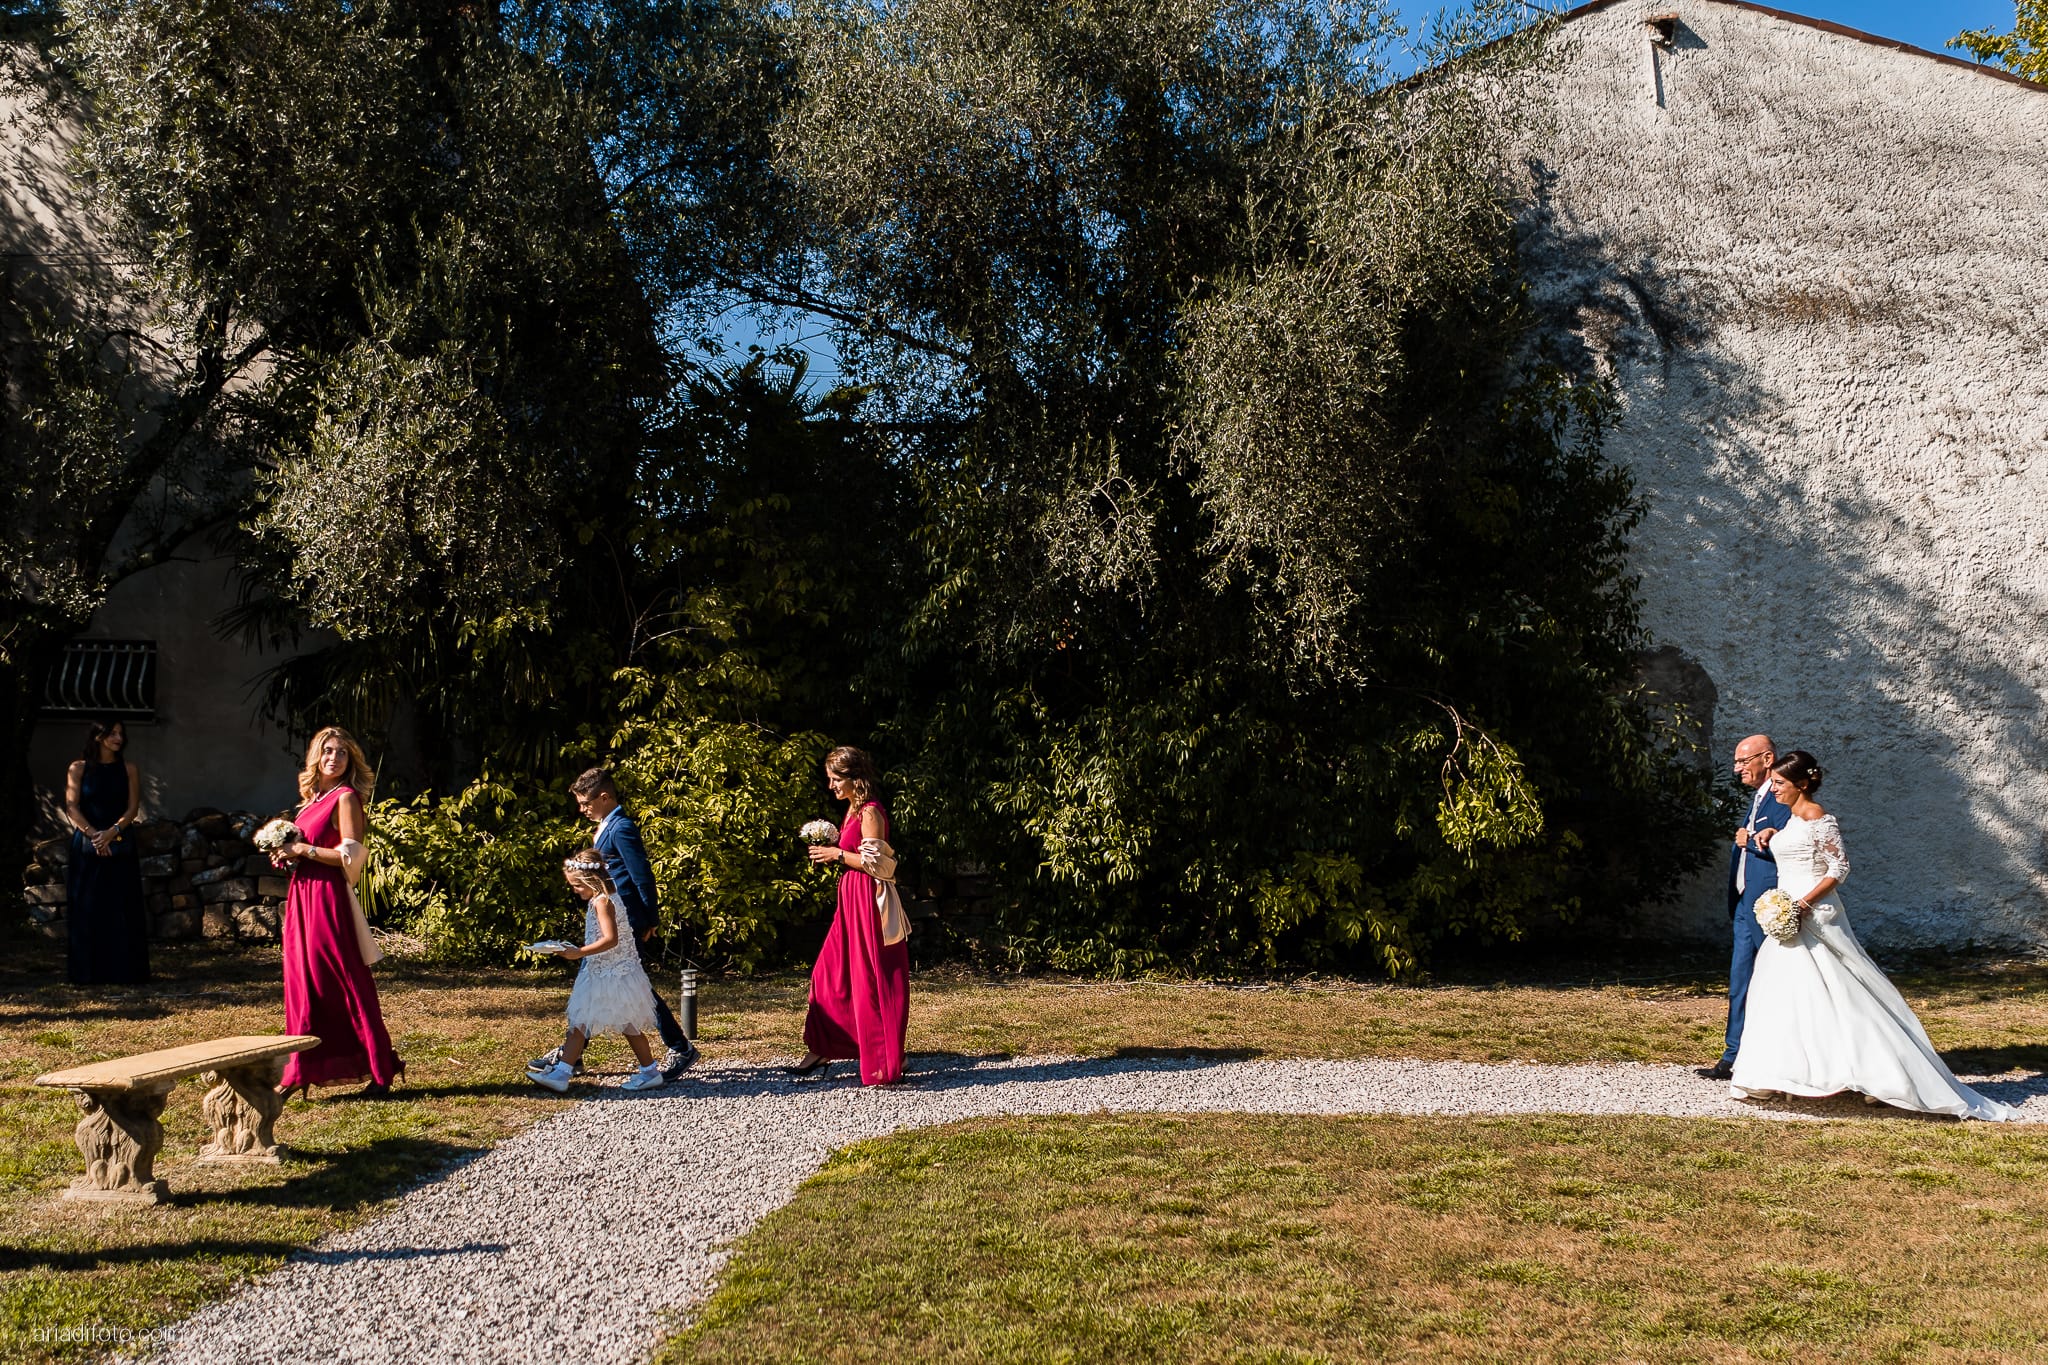 Annalisa Michele Matrimonio all'aperto Gorizia Villa Attems cerimonia simbolica all'aperto arrivo sposa